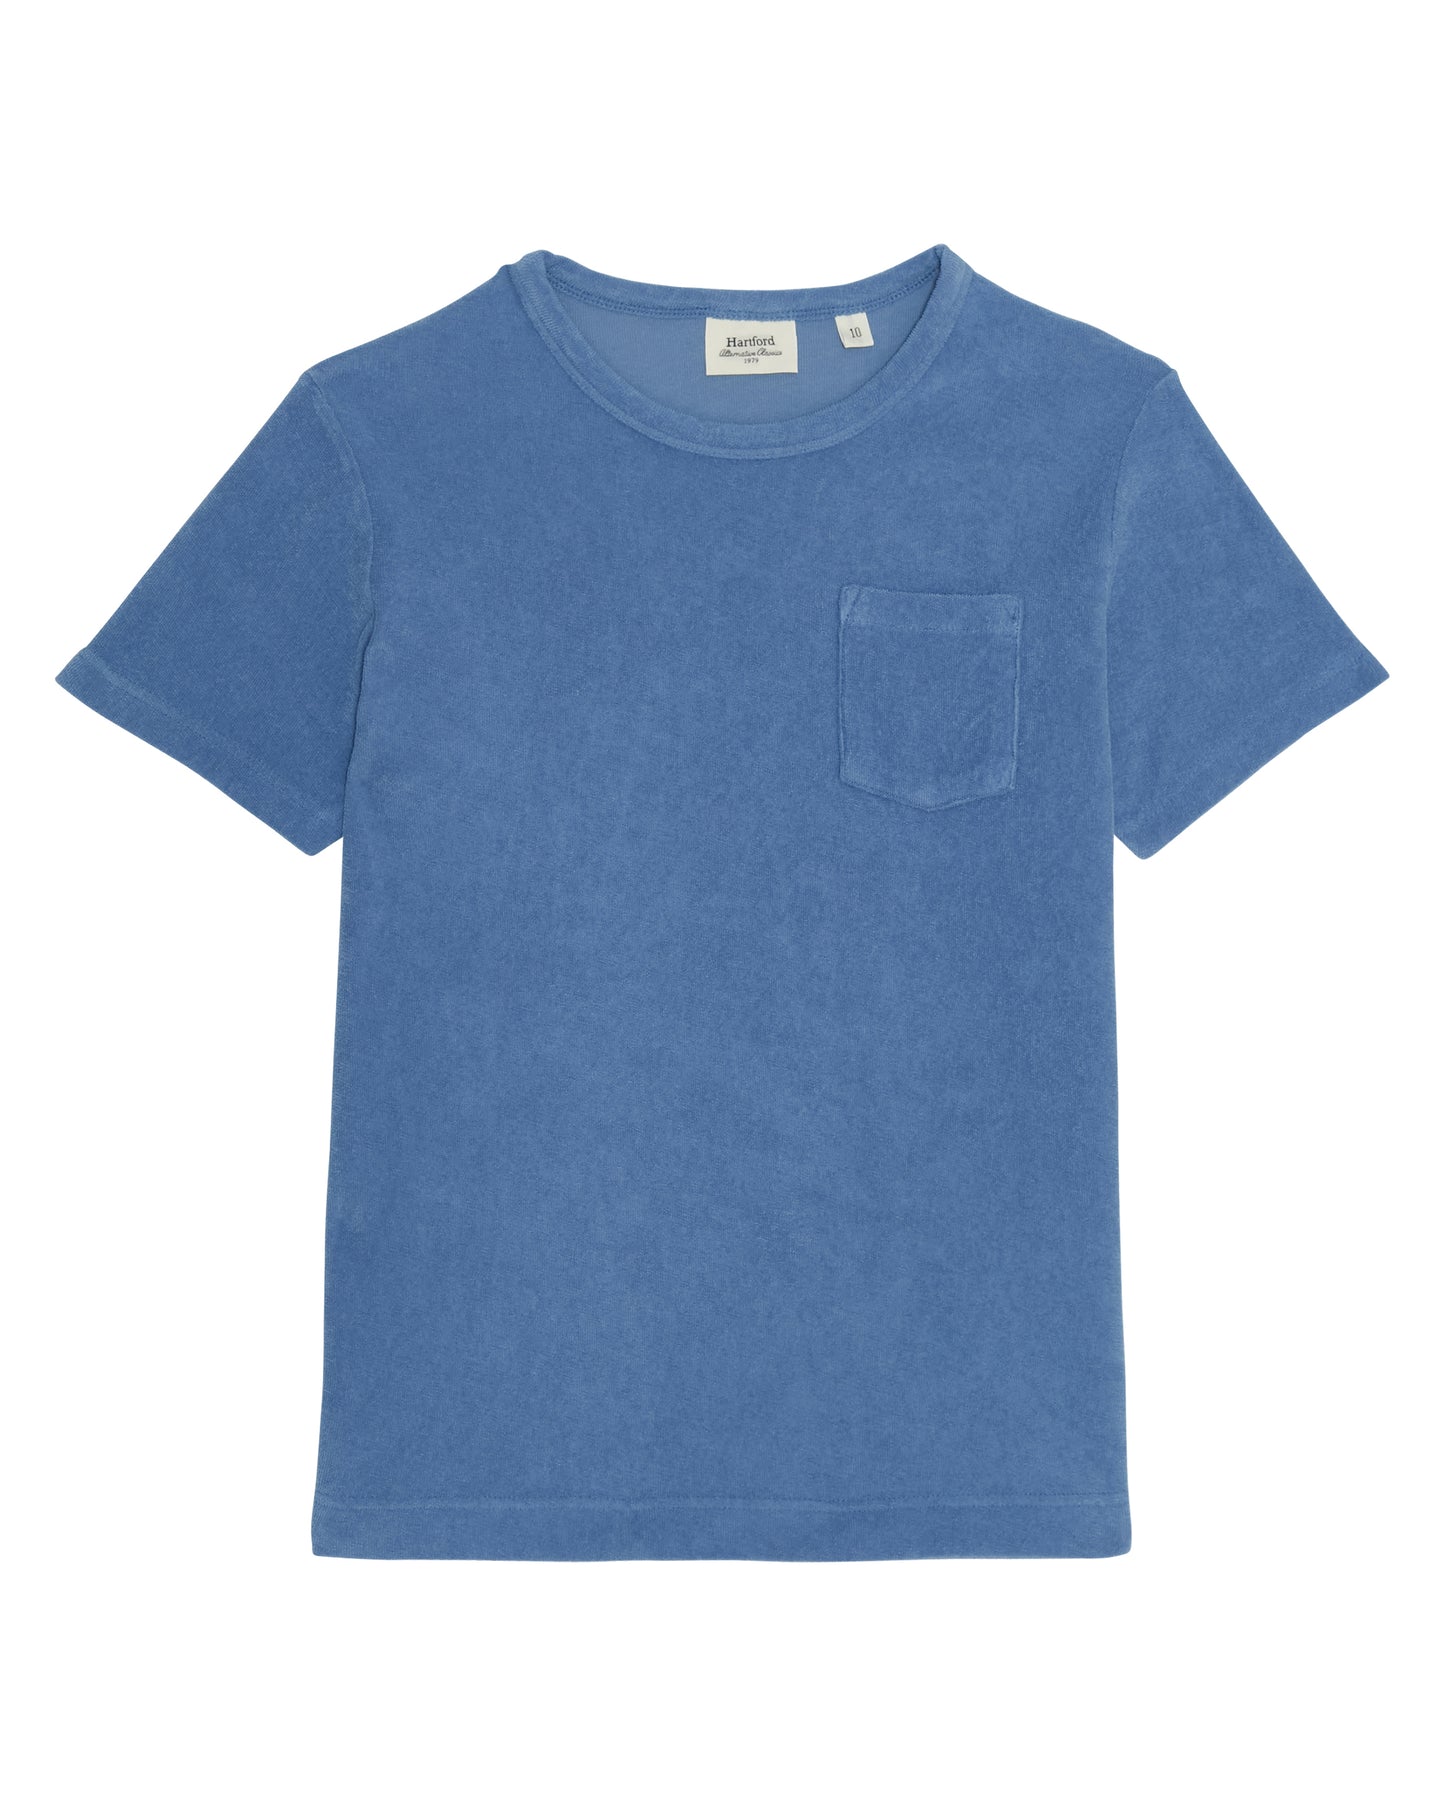 Boys' Chambray Terry Cloth T-Shirt